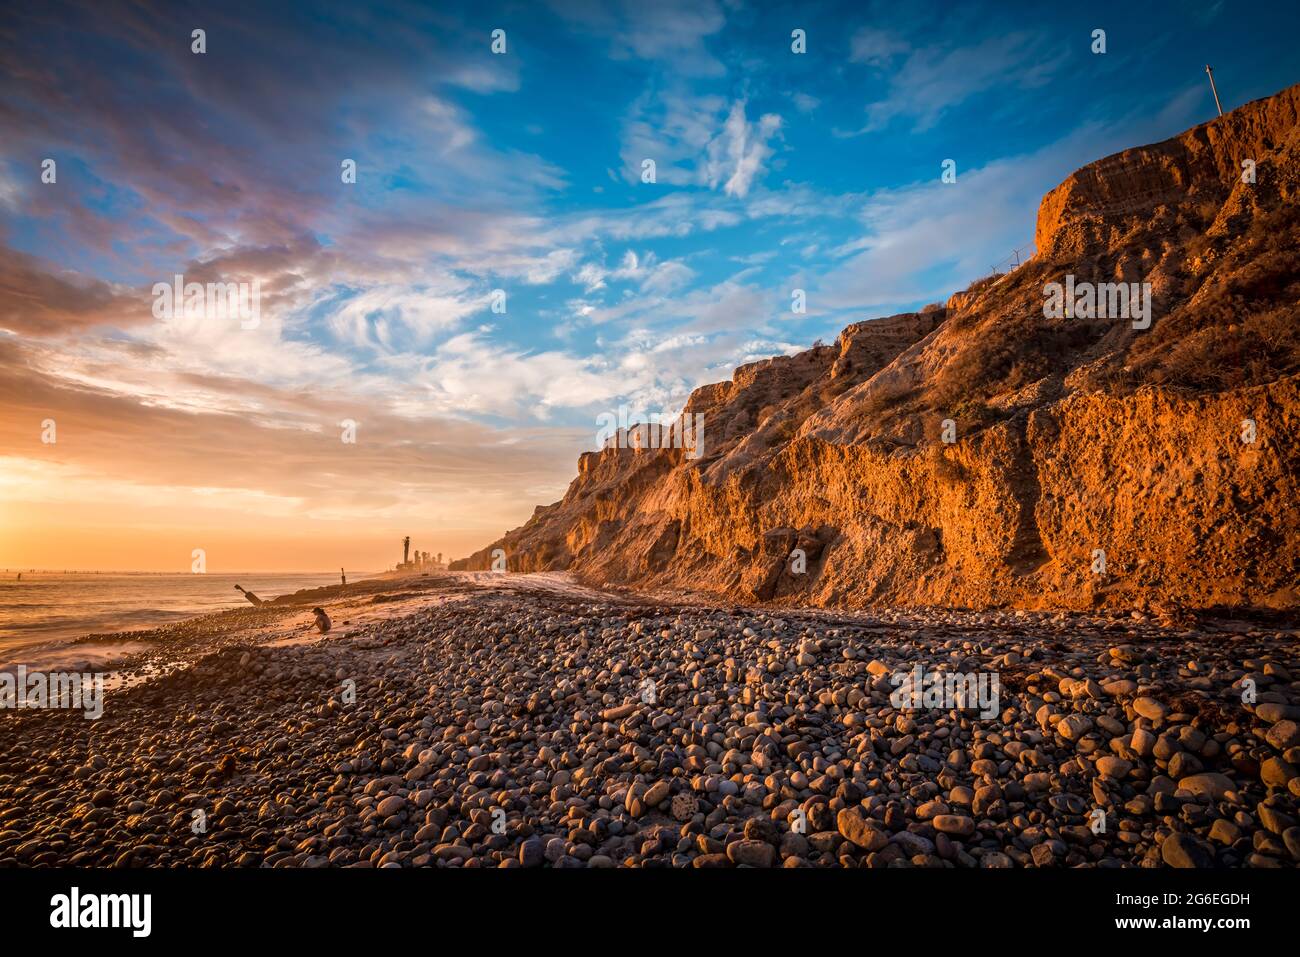 Hermosa puesta de sol en la playa con acantilados iluminados por el sol y una costa rocosa Foto de stock